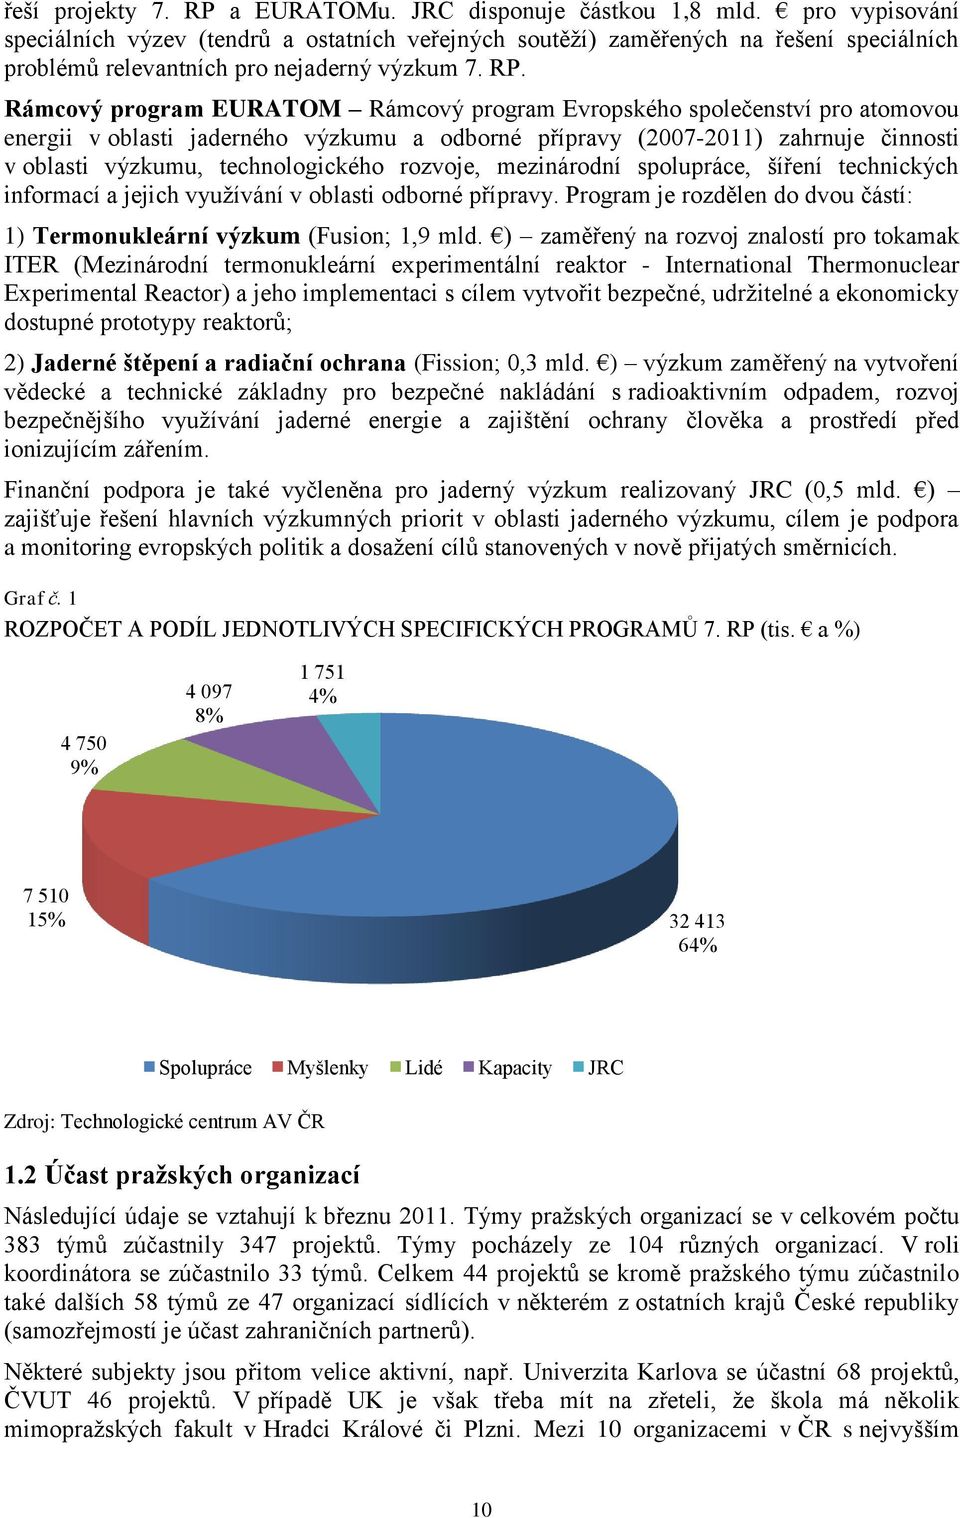 Rámcový program EURATOM Rámcový program Evropského společenství pro atomovou energii v oblasti jaderného výzkumu a odborné přípravy (2007-2011) zahrnuje činnosti v oblasti výzkumu, technologického